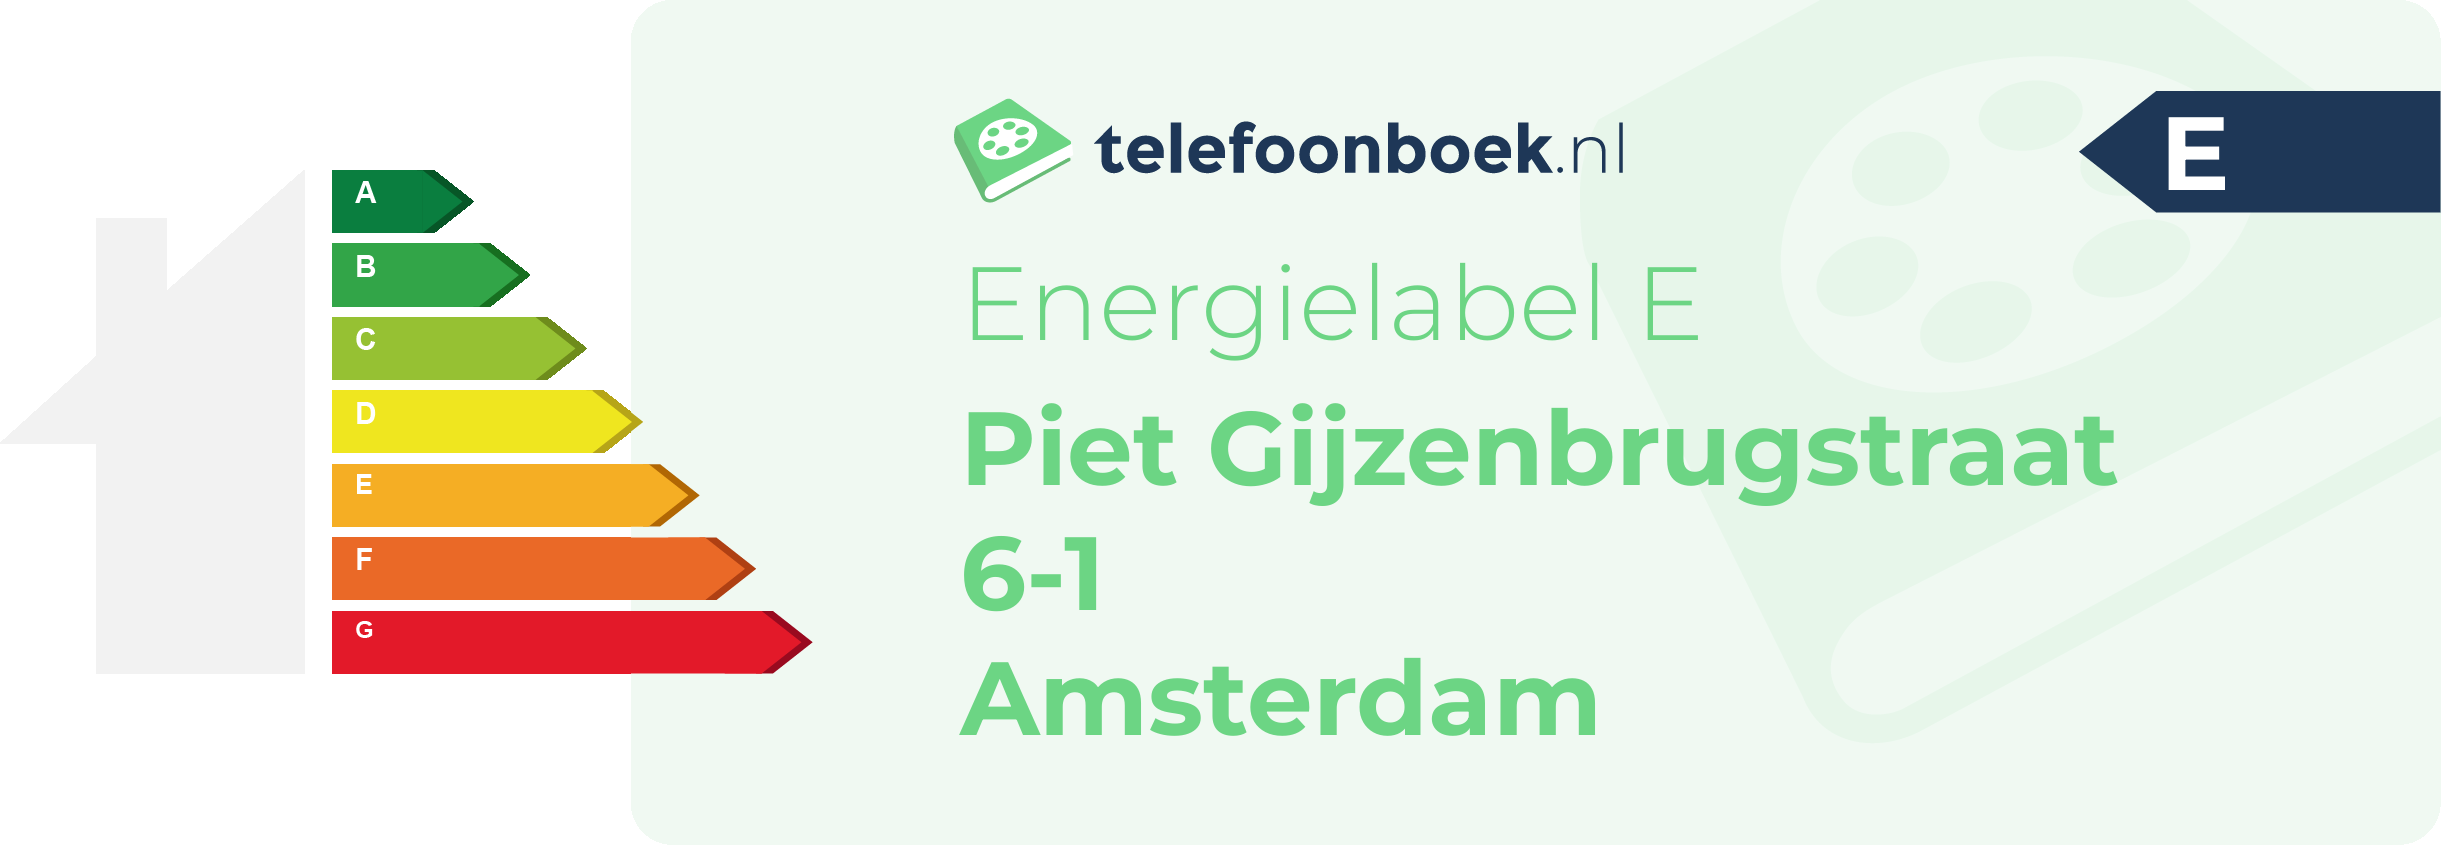 Energielabel Piet Gijzenbrugstraat 6-1 Amsterdam